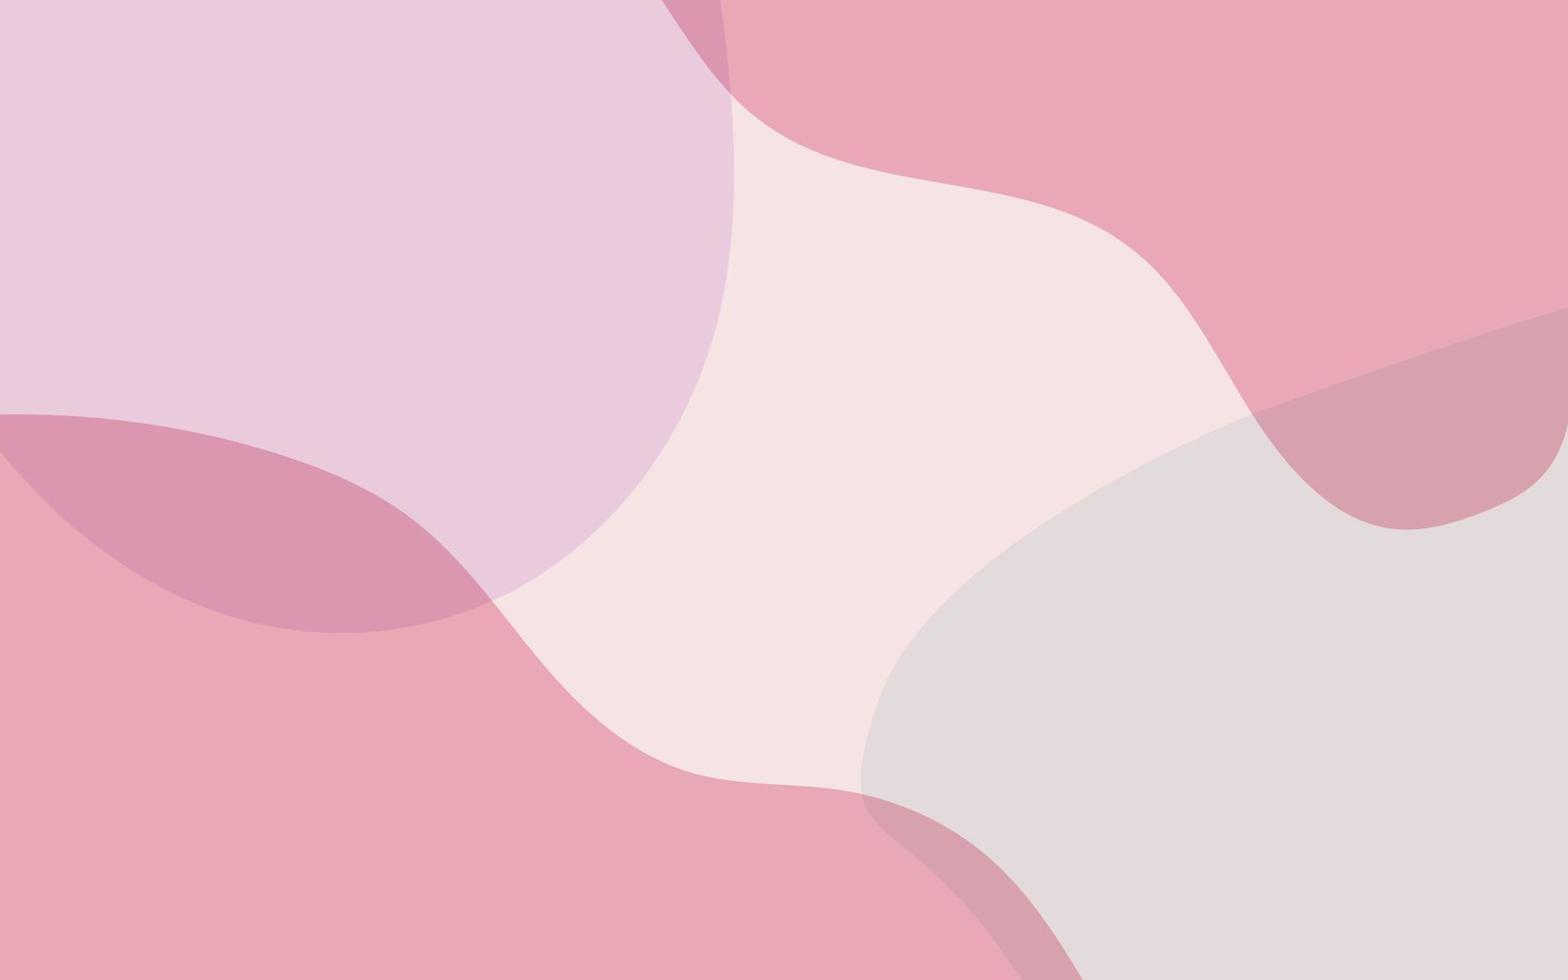 modelli alla moda di moda forme astratte e linea in colori pastello rosa. sfondo neutro in stile minimalista. illustrazione vettoriale contemporanea